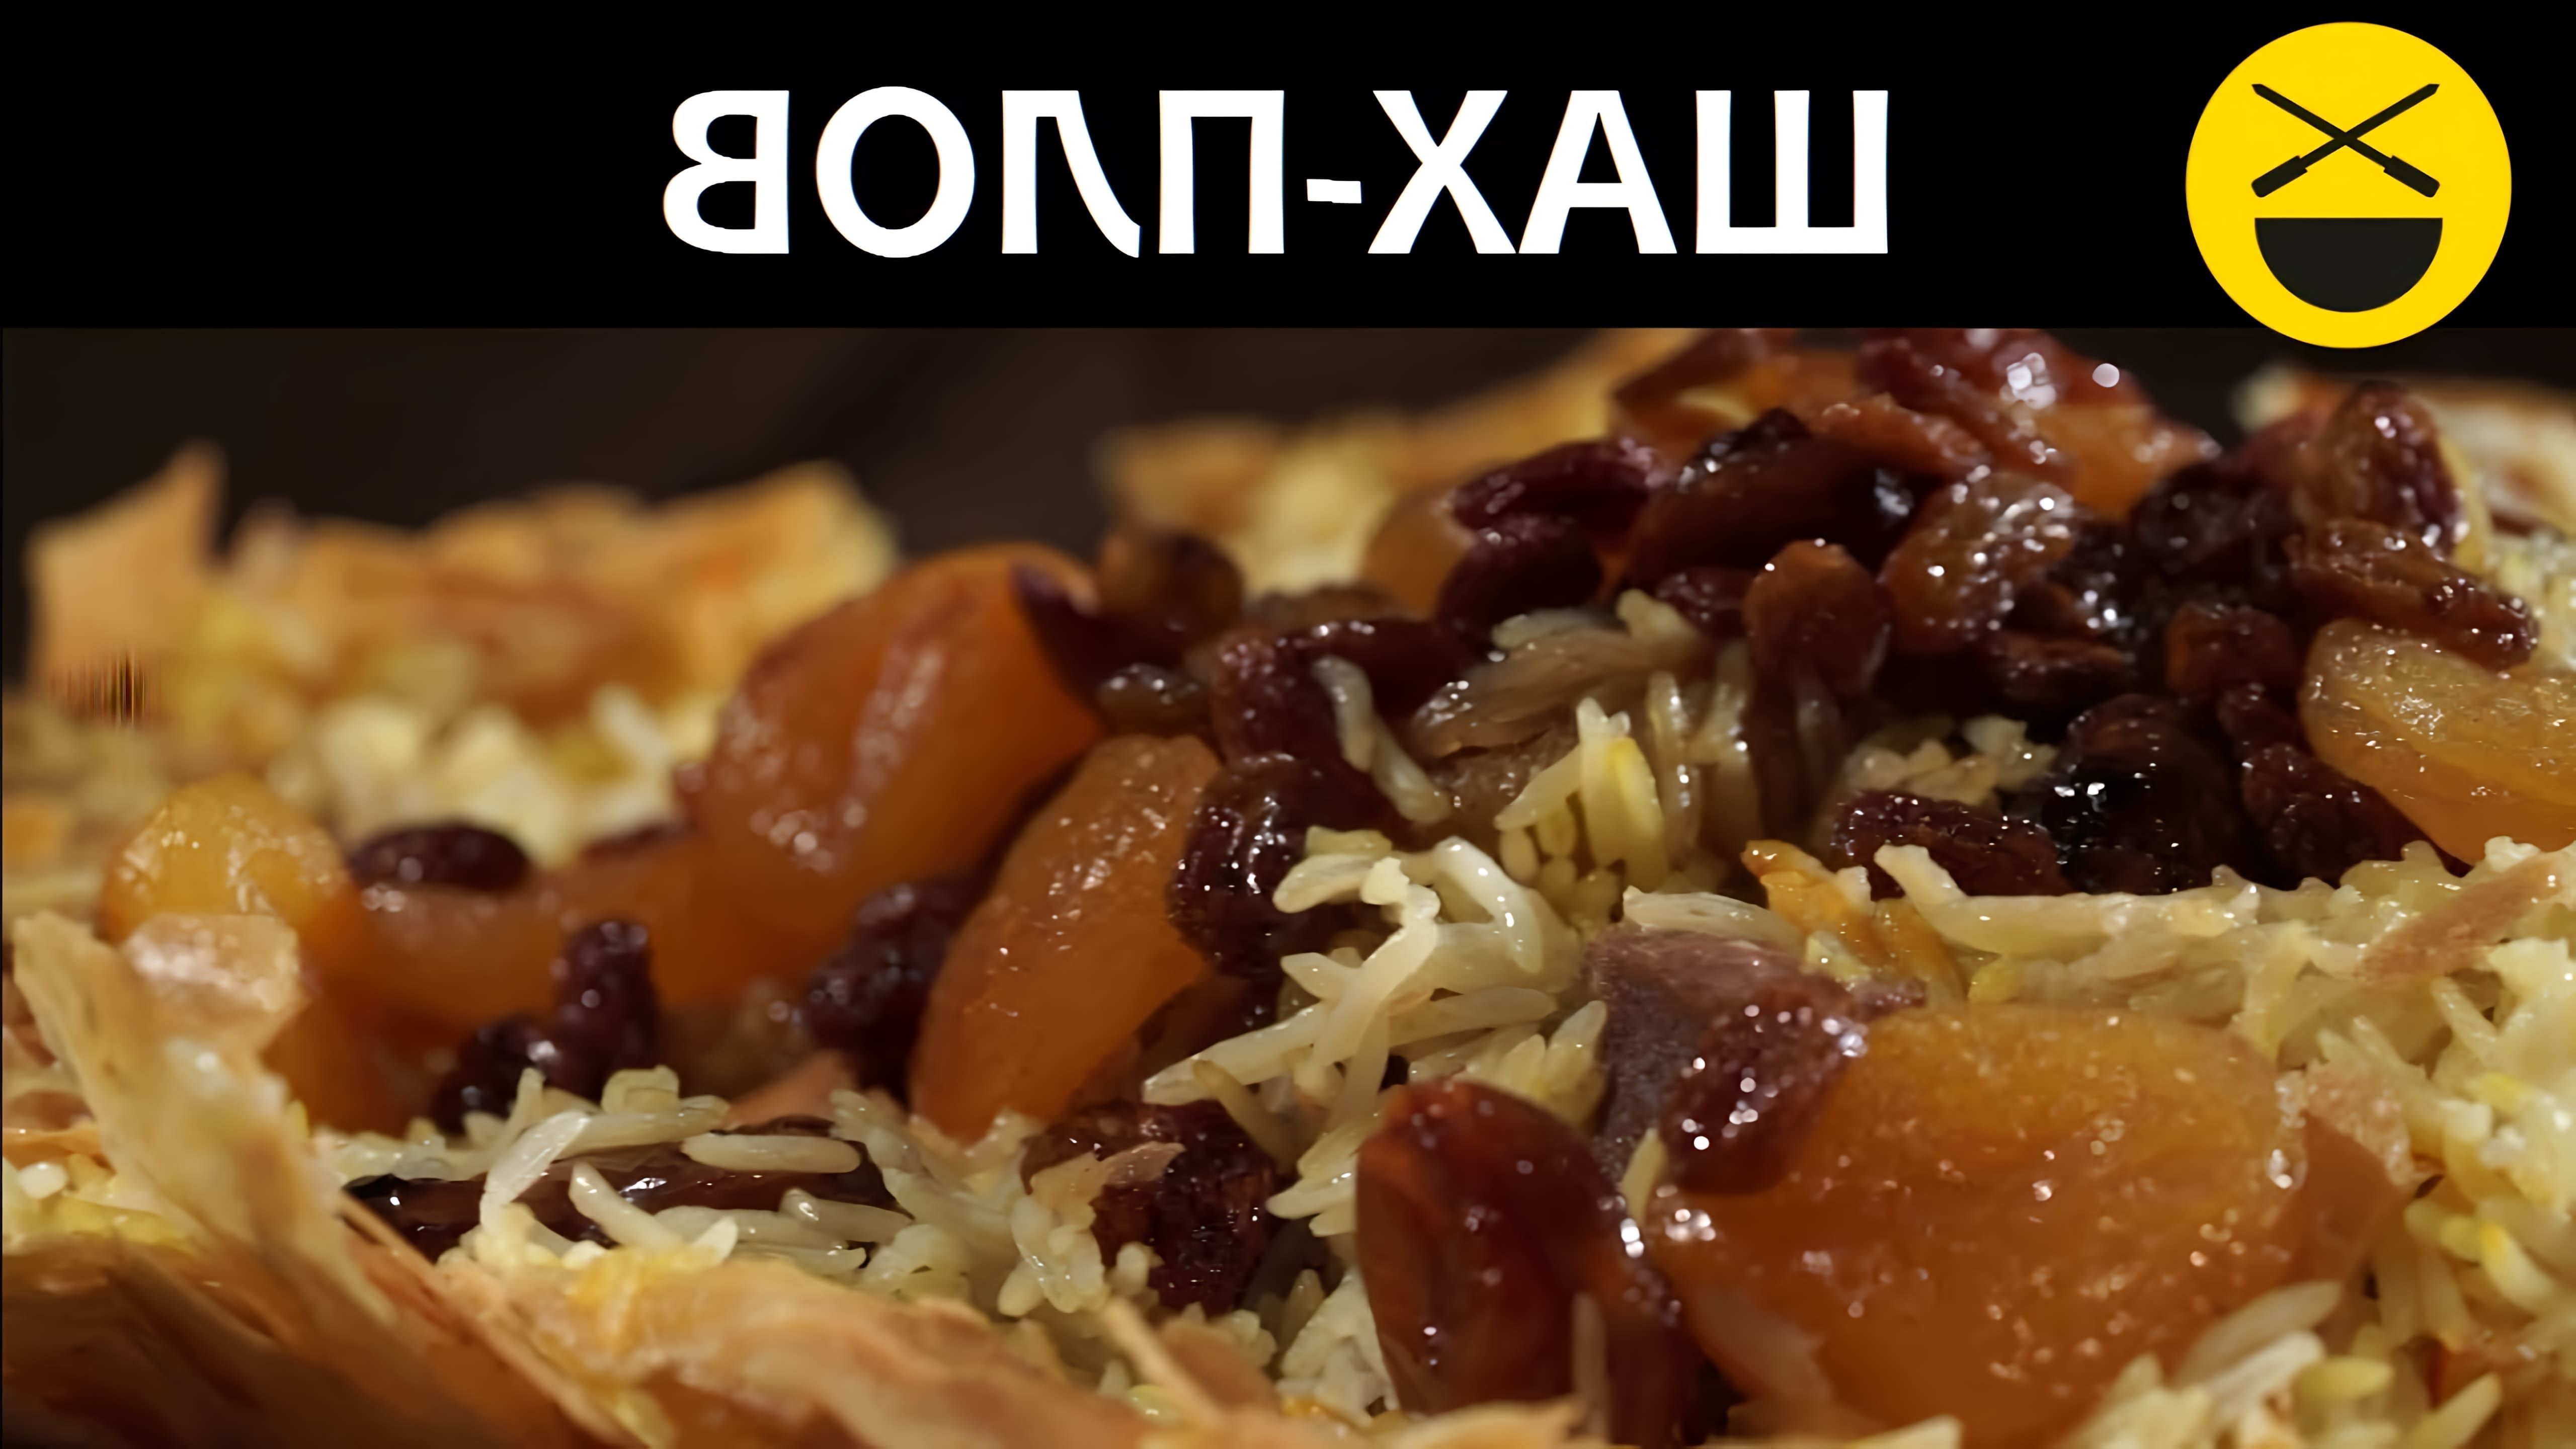 Рецепт Азербайджанского ШАХ-ПЛОВА

Шах-плов - это традиционное азербайджанское блюдо, которое готовится из риса, мяса и овощей